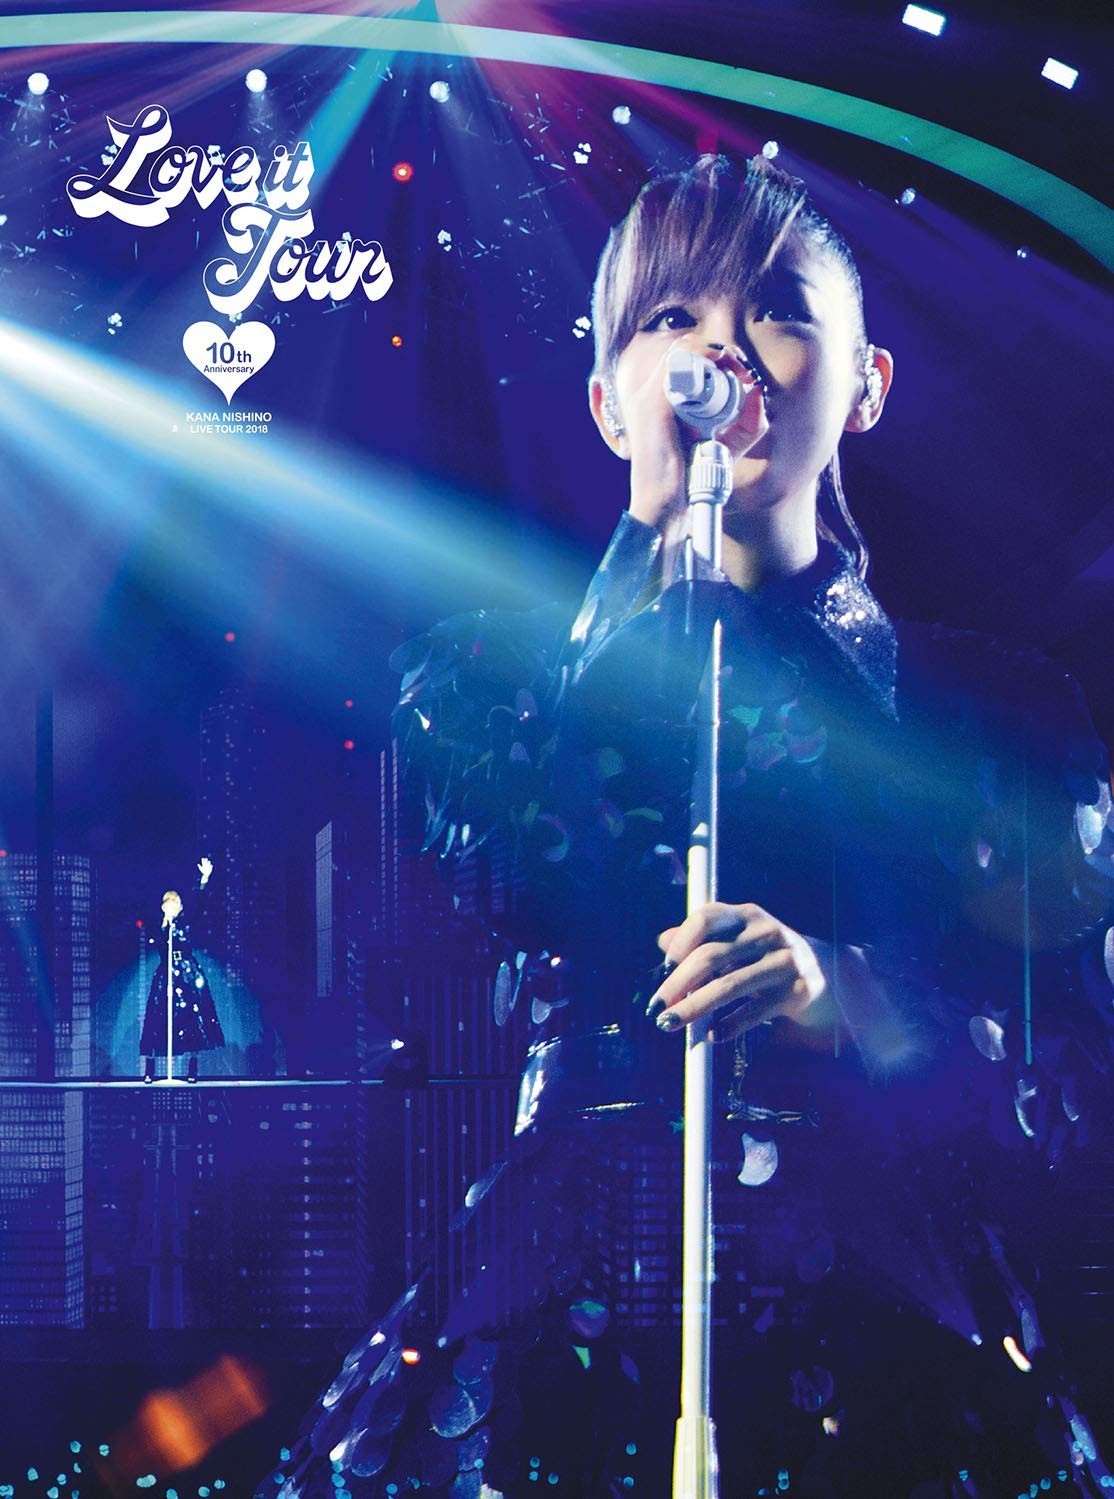 西野カナ (Kana Nishino) – LOVE it Tour 〜10th Anniversary〜 [Blu-Ray ISO + BDRip 1080p] [2018.12.28]